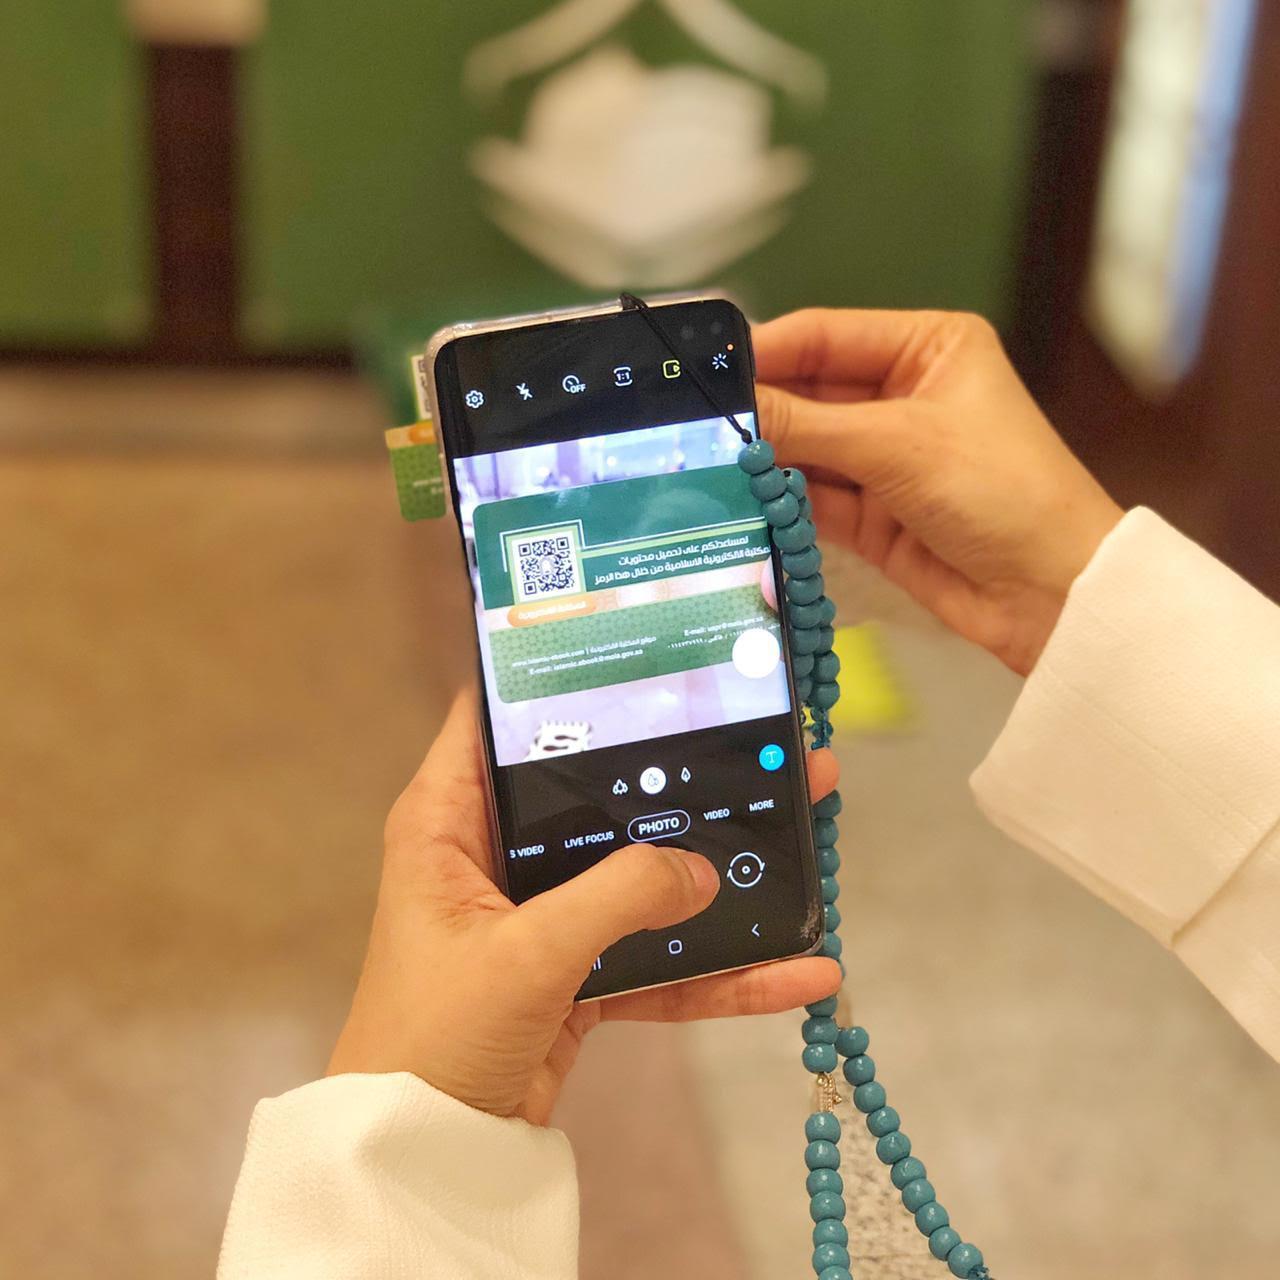 وزارة الشؤون الإسلامية السعودية توزع بطاقات لتصفح المكتبة الإلكترونية عبر أجهزة النقال للحجاج